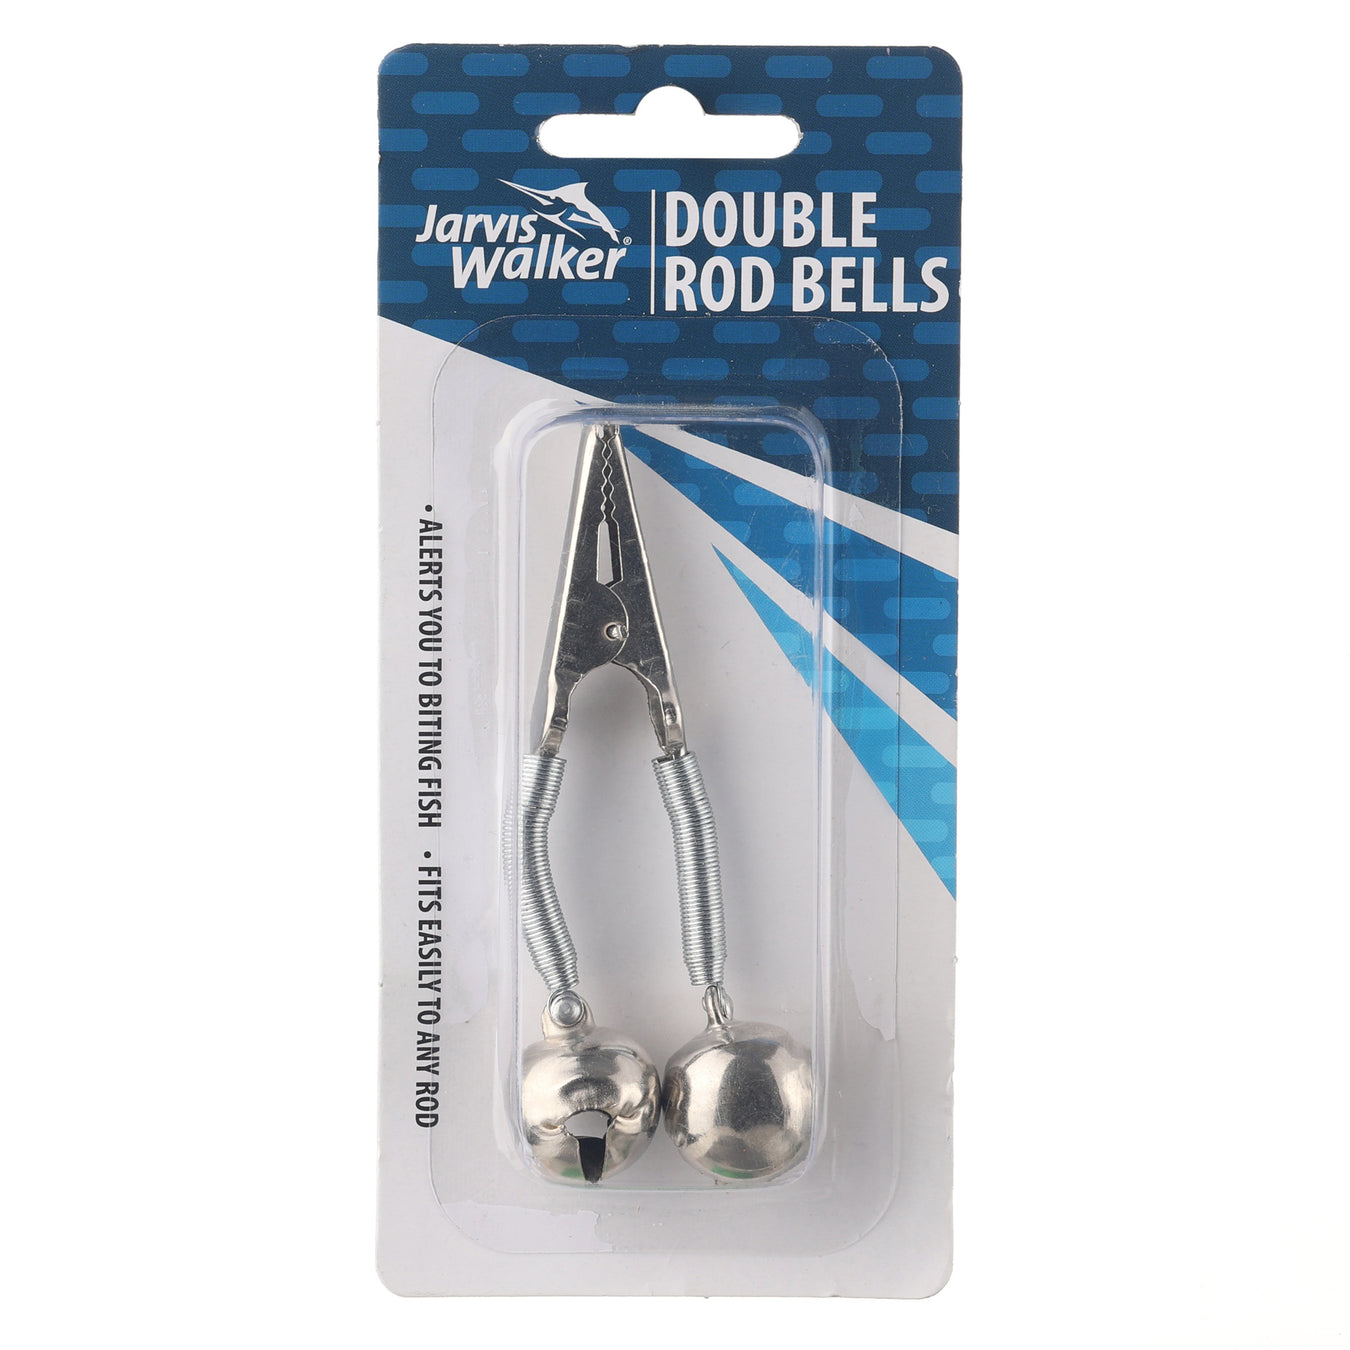 Rod Bells & Accessories